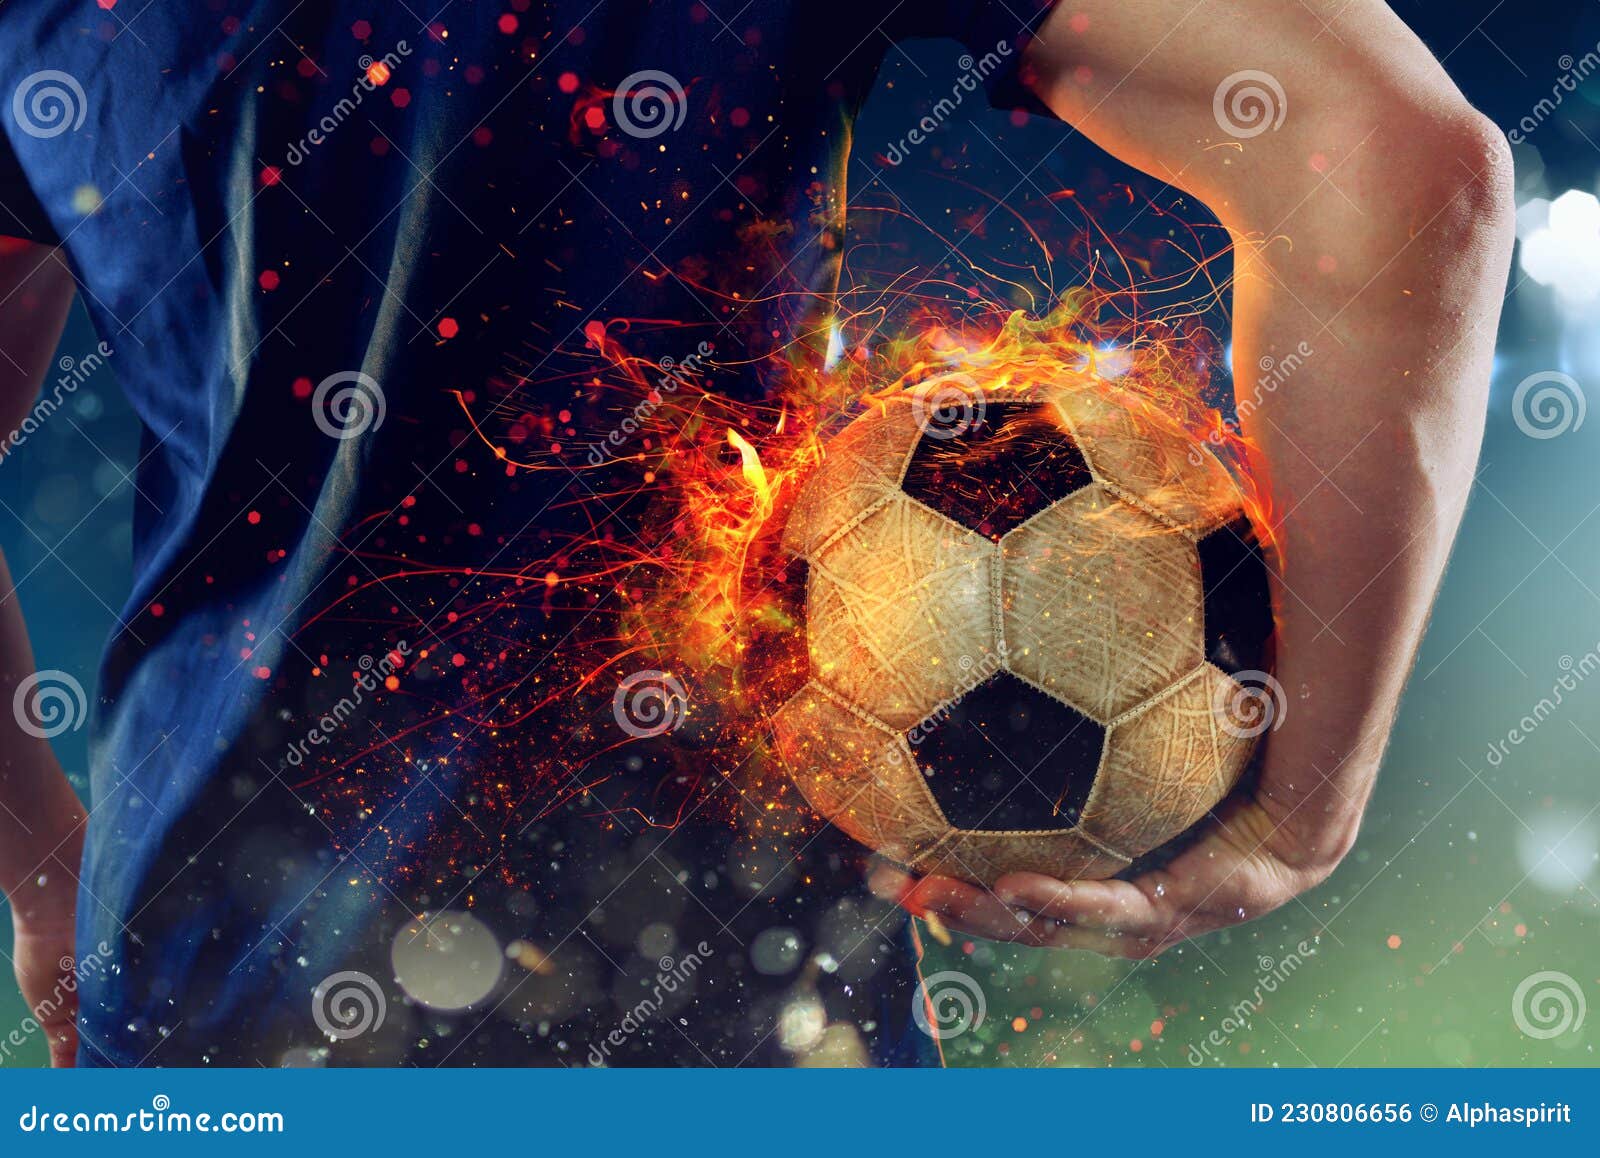 Fußballspieler Bereit Zum Spielen Mit Fiery Soccerball Stockfoto